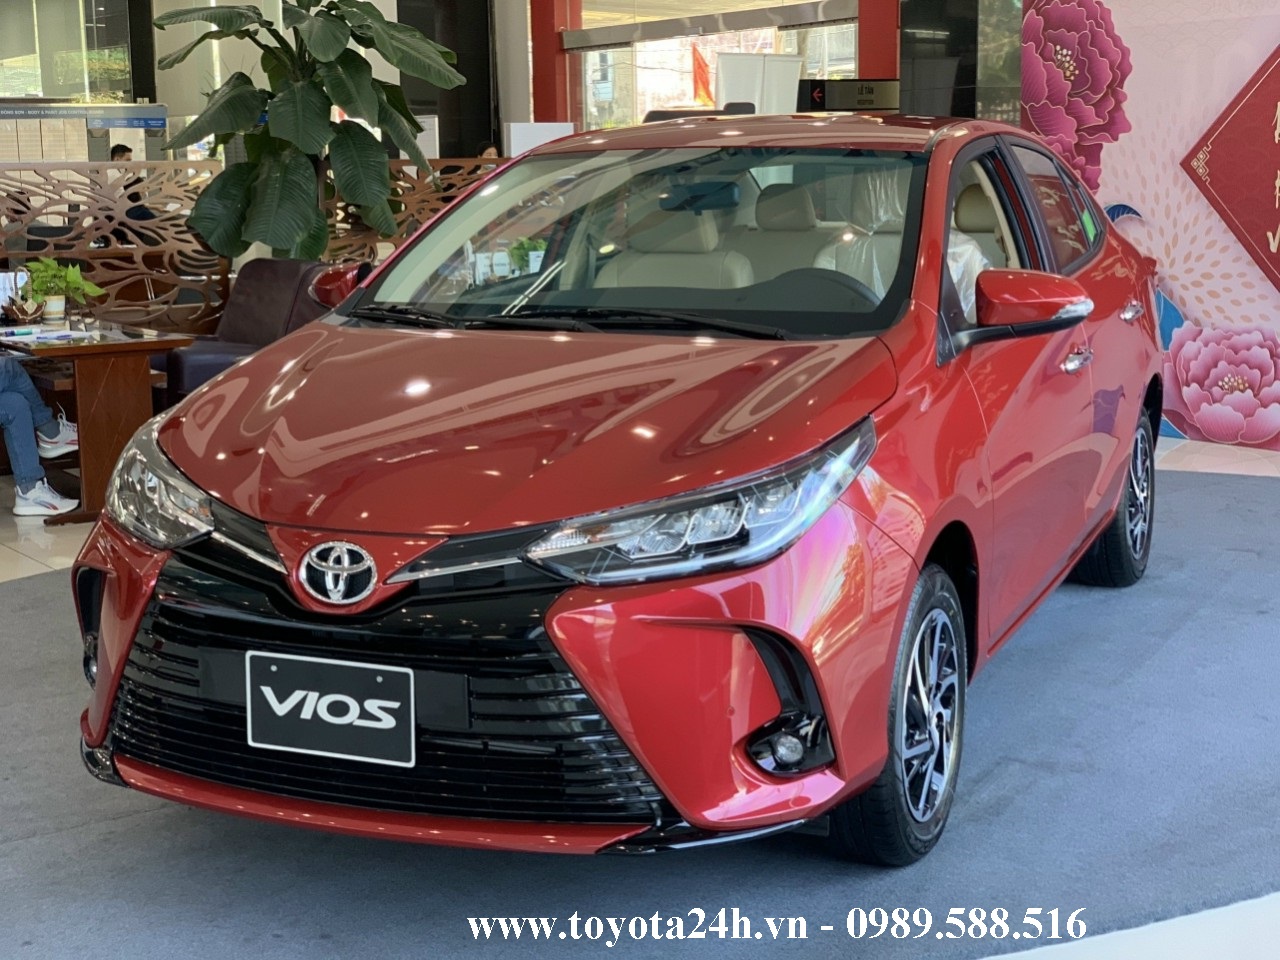 Toyota Vios G 2019 màu đỏ Đã bán  Ecoauto Chuyên mua bán trao đổi ký  gửi Sửa chữa bảo dưỡng các loại xe ô tô